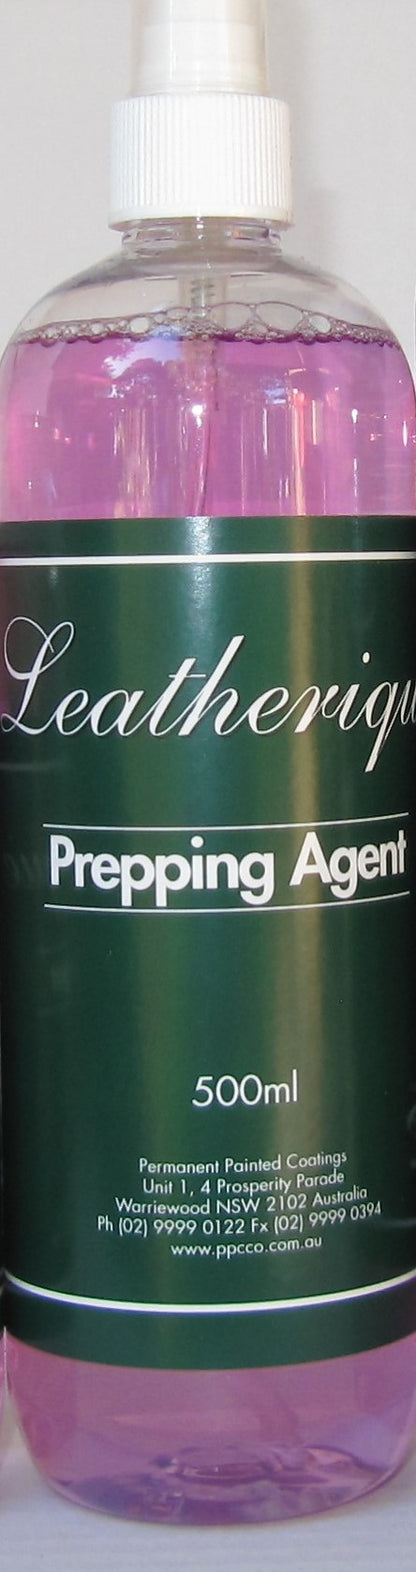 Leatherique Prepping Agent